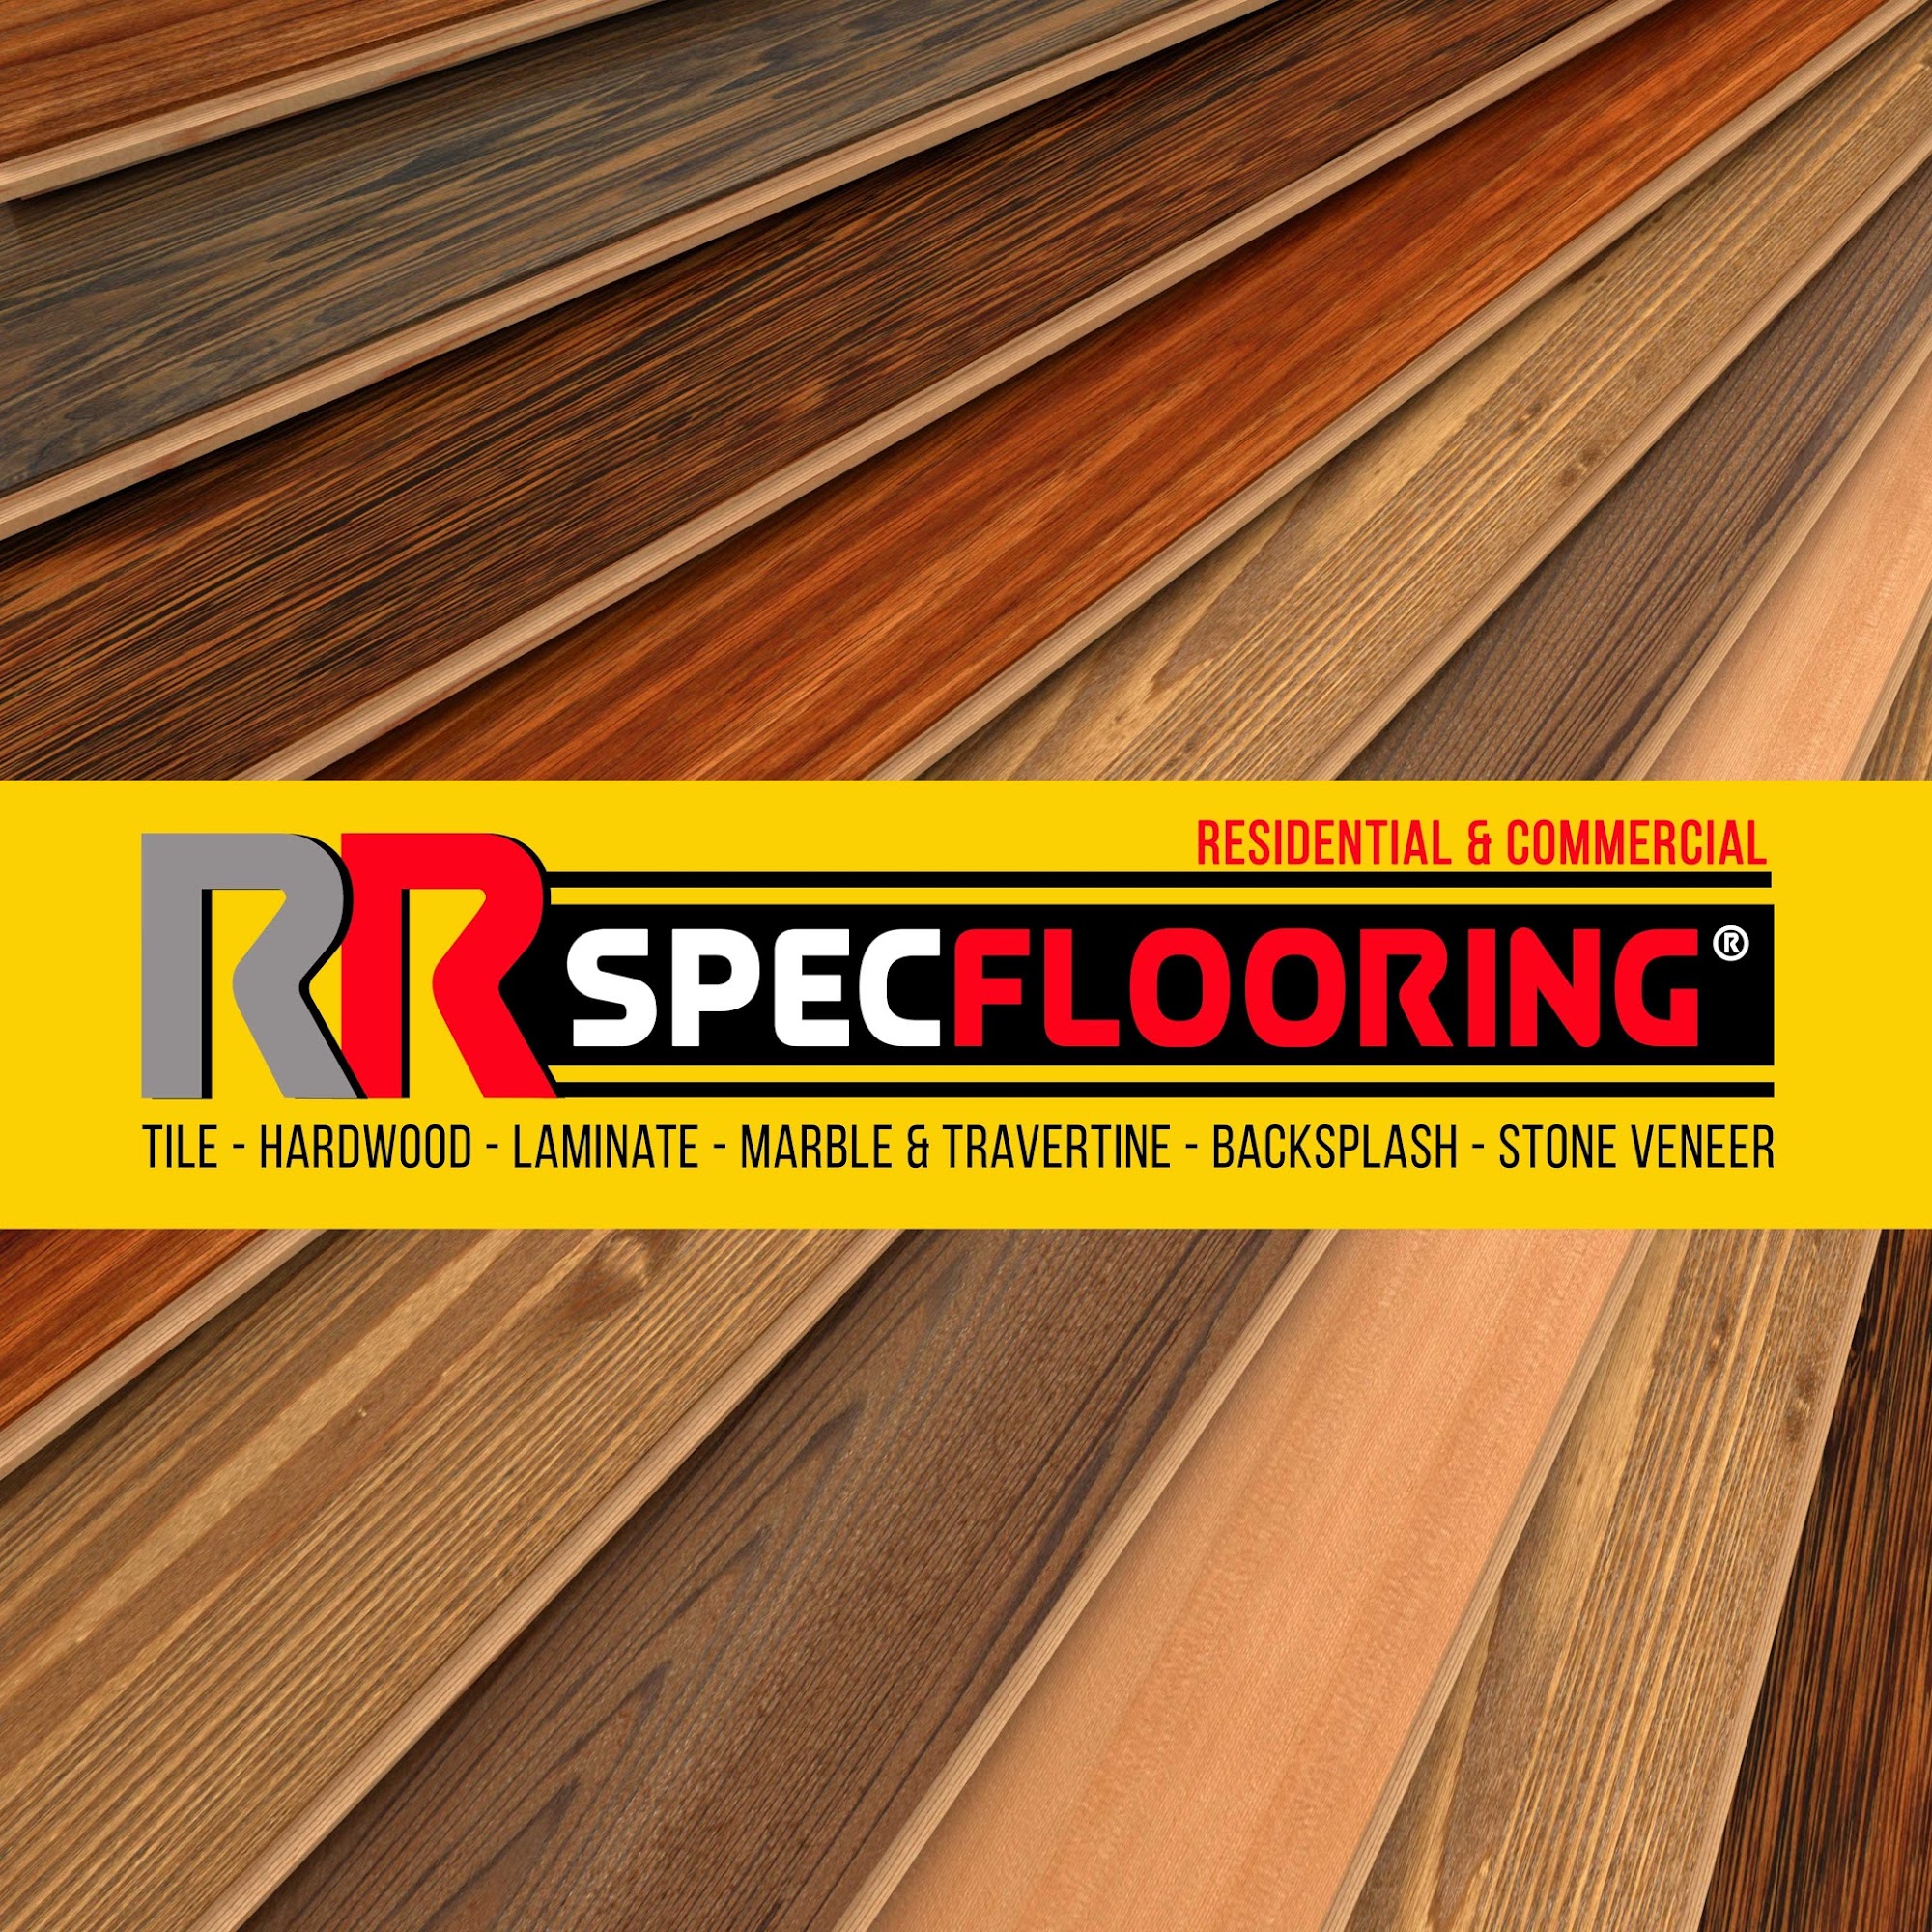 RR SPEC FLOORING - Flooring Installers - Tile installers - Bathroom Remodel 32082